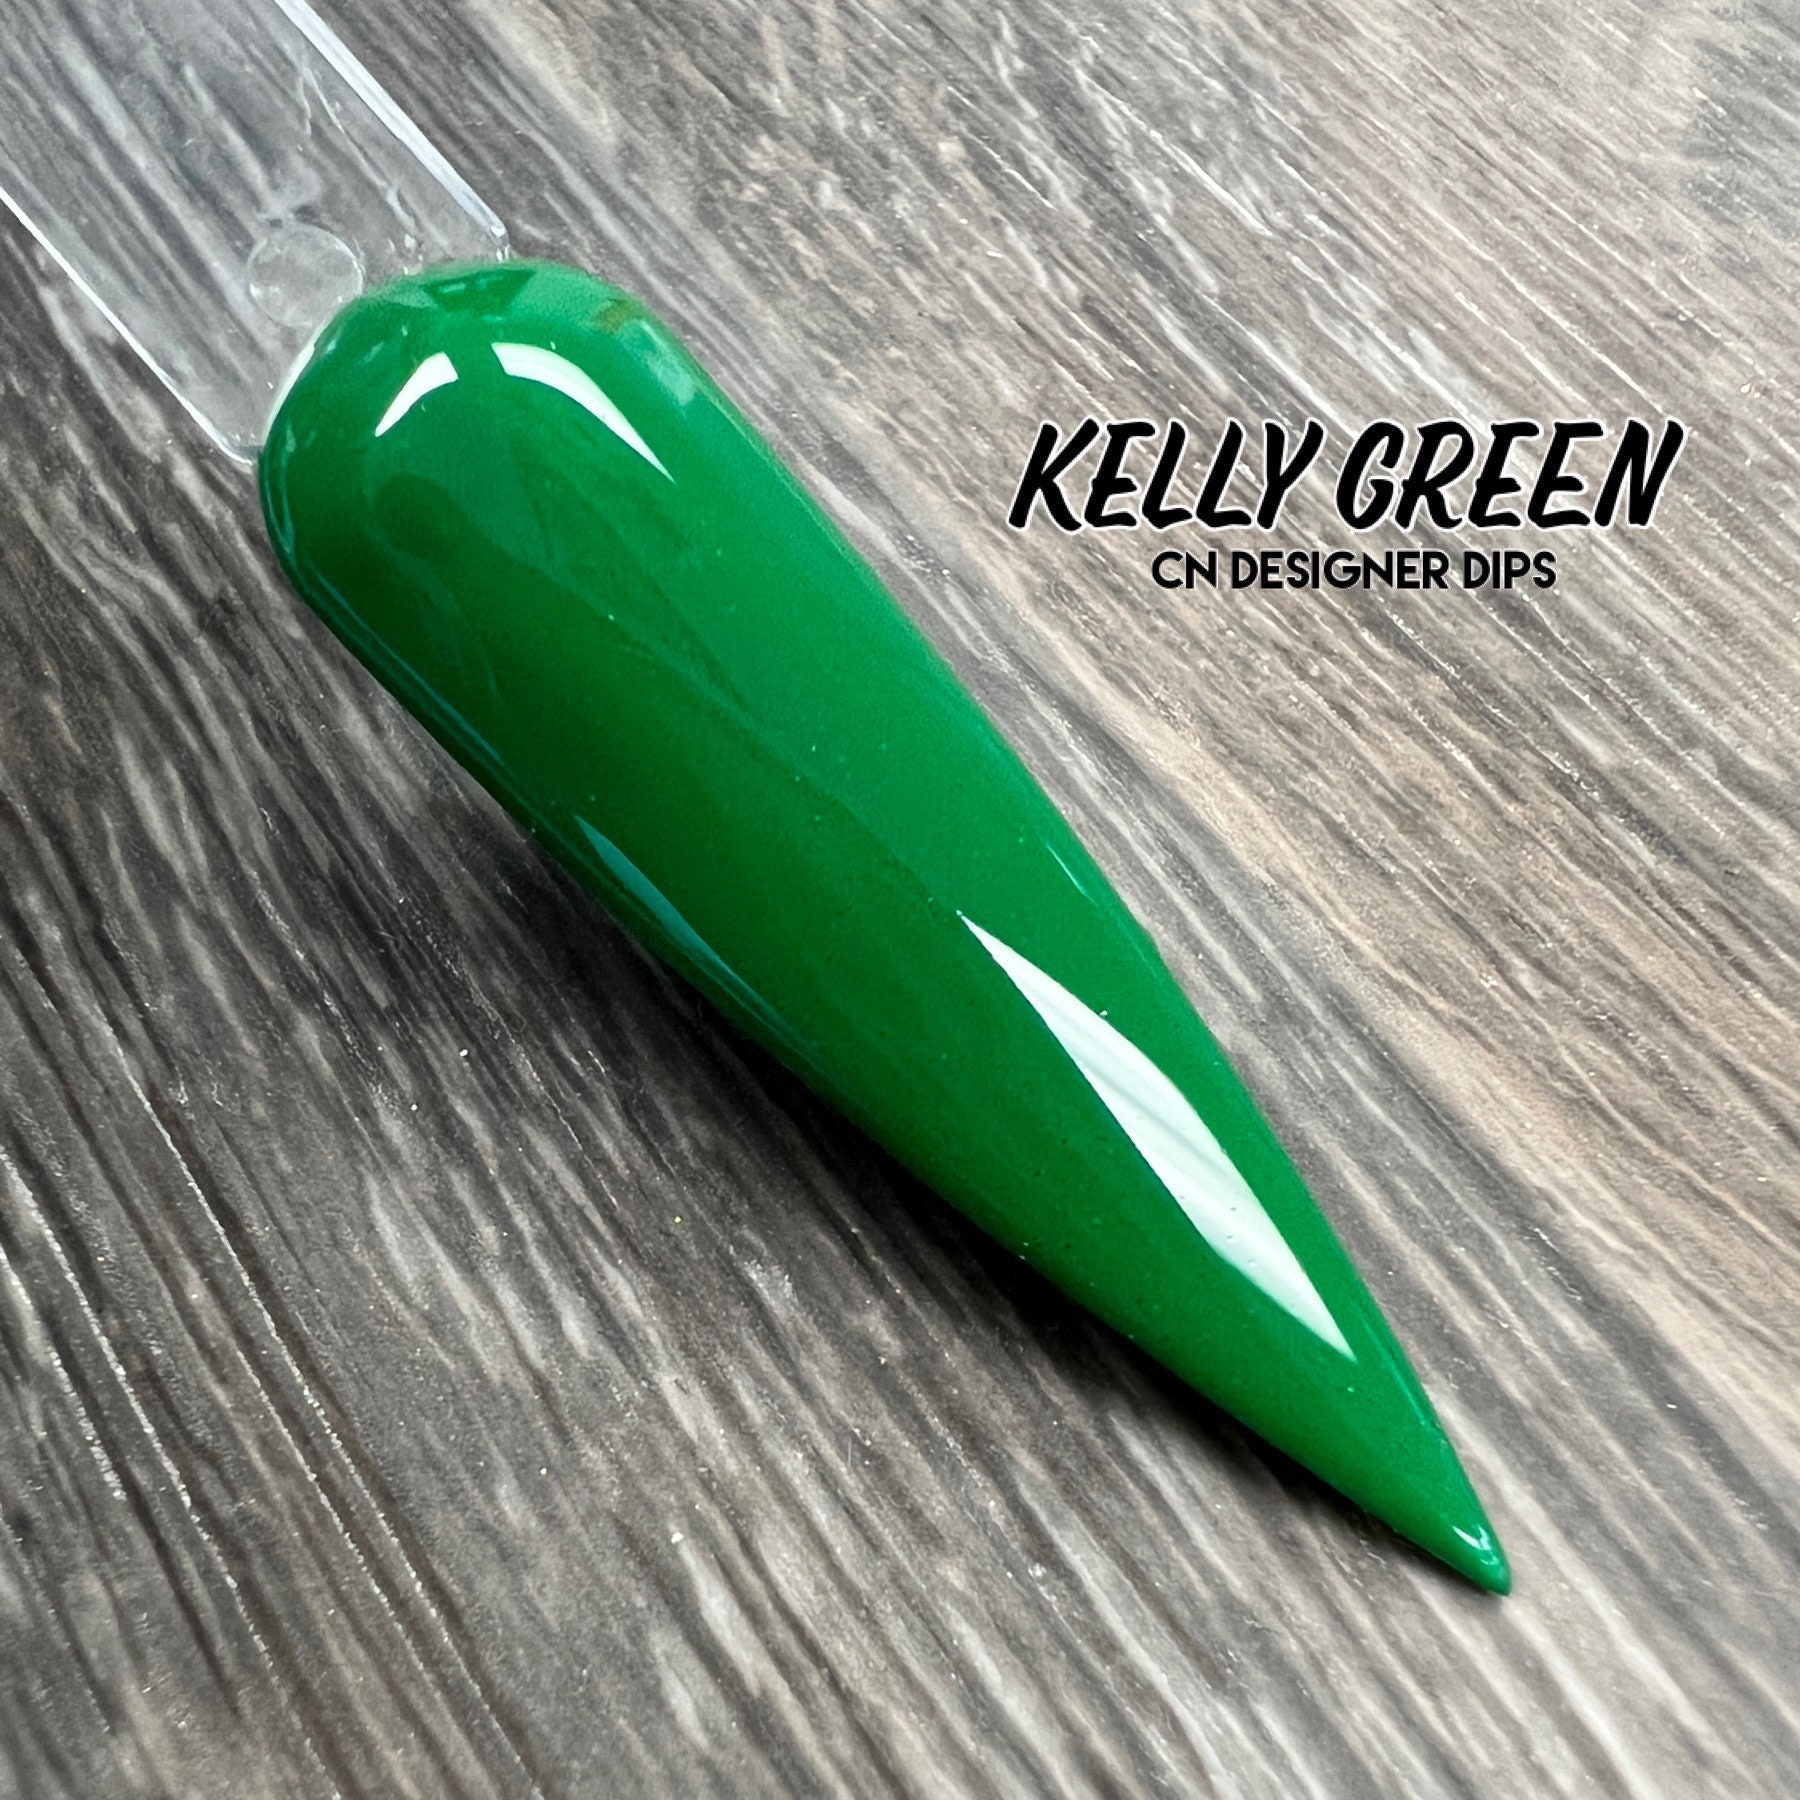 Kelly Green - Dip Pulver, Nail Dippulver Für Nägel, Nagelpulver, Acryl, Acrylnagel von Etsy - CNDesignerDips